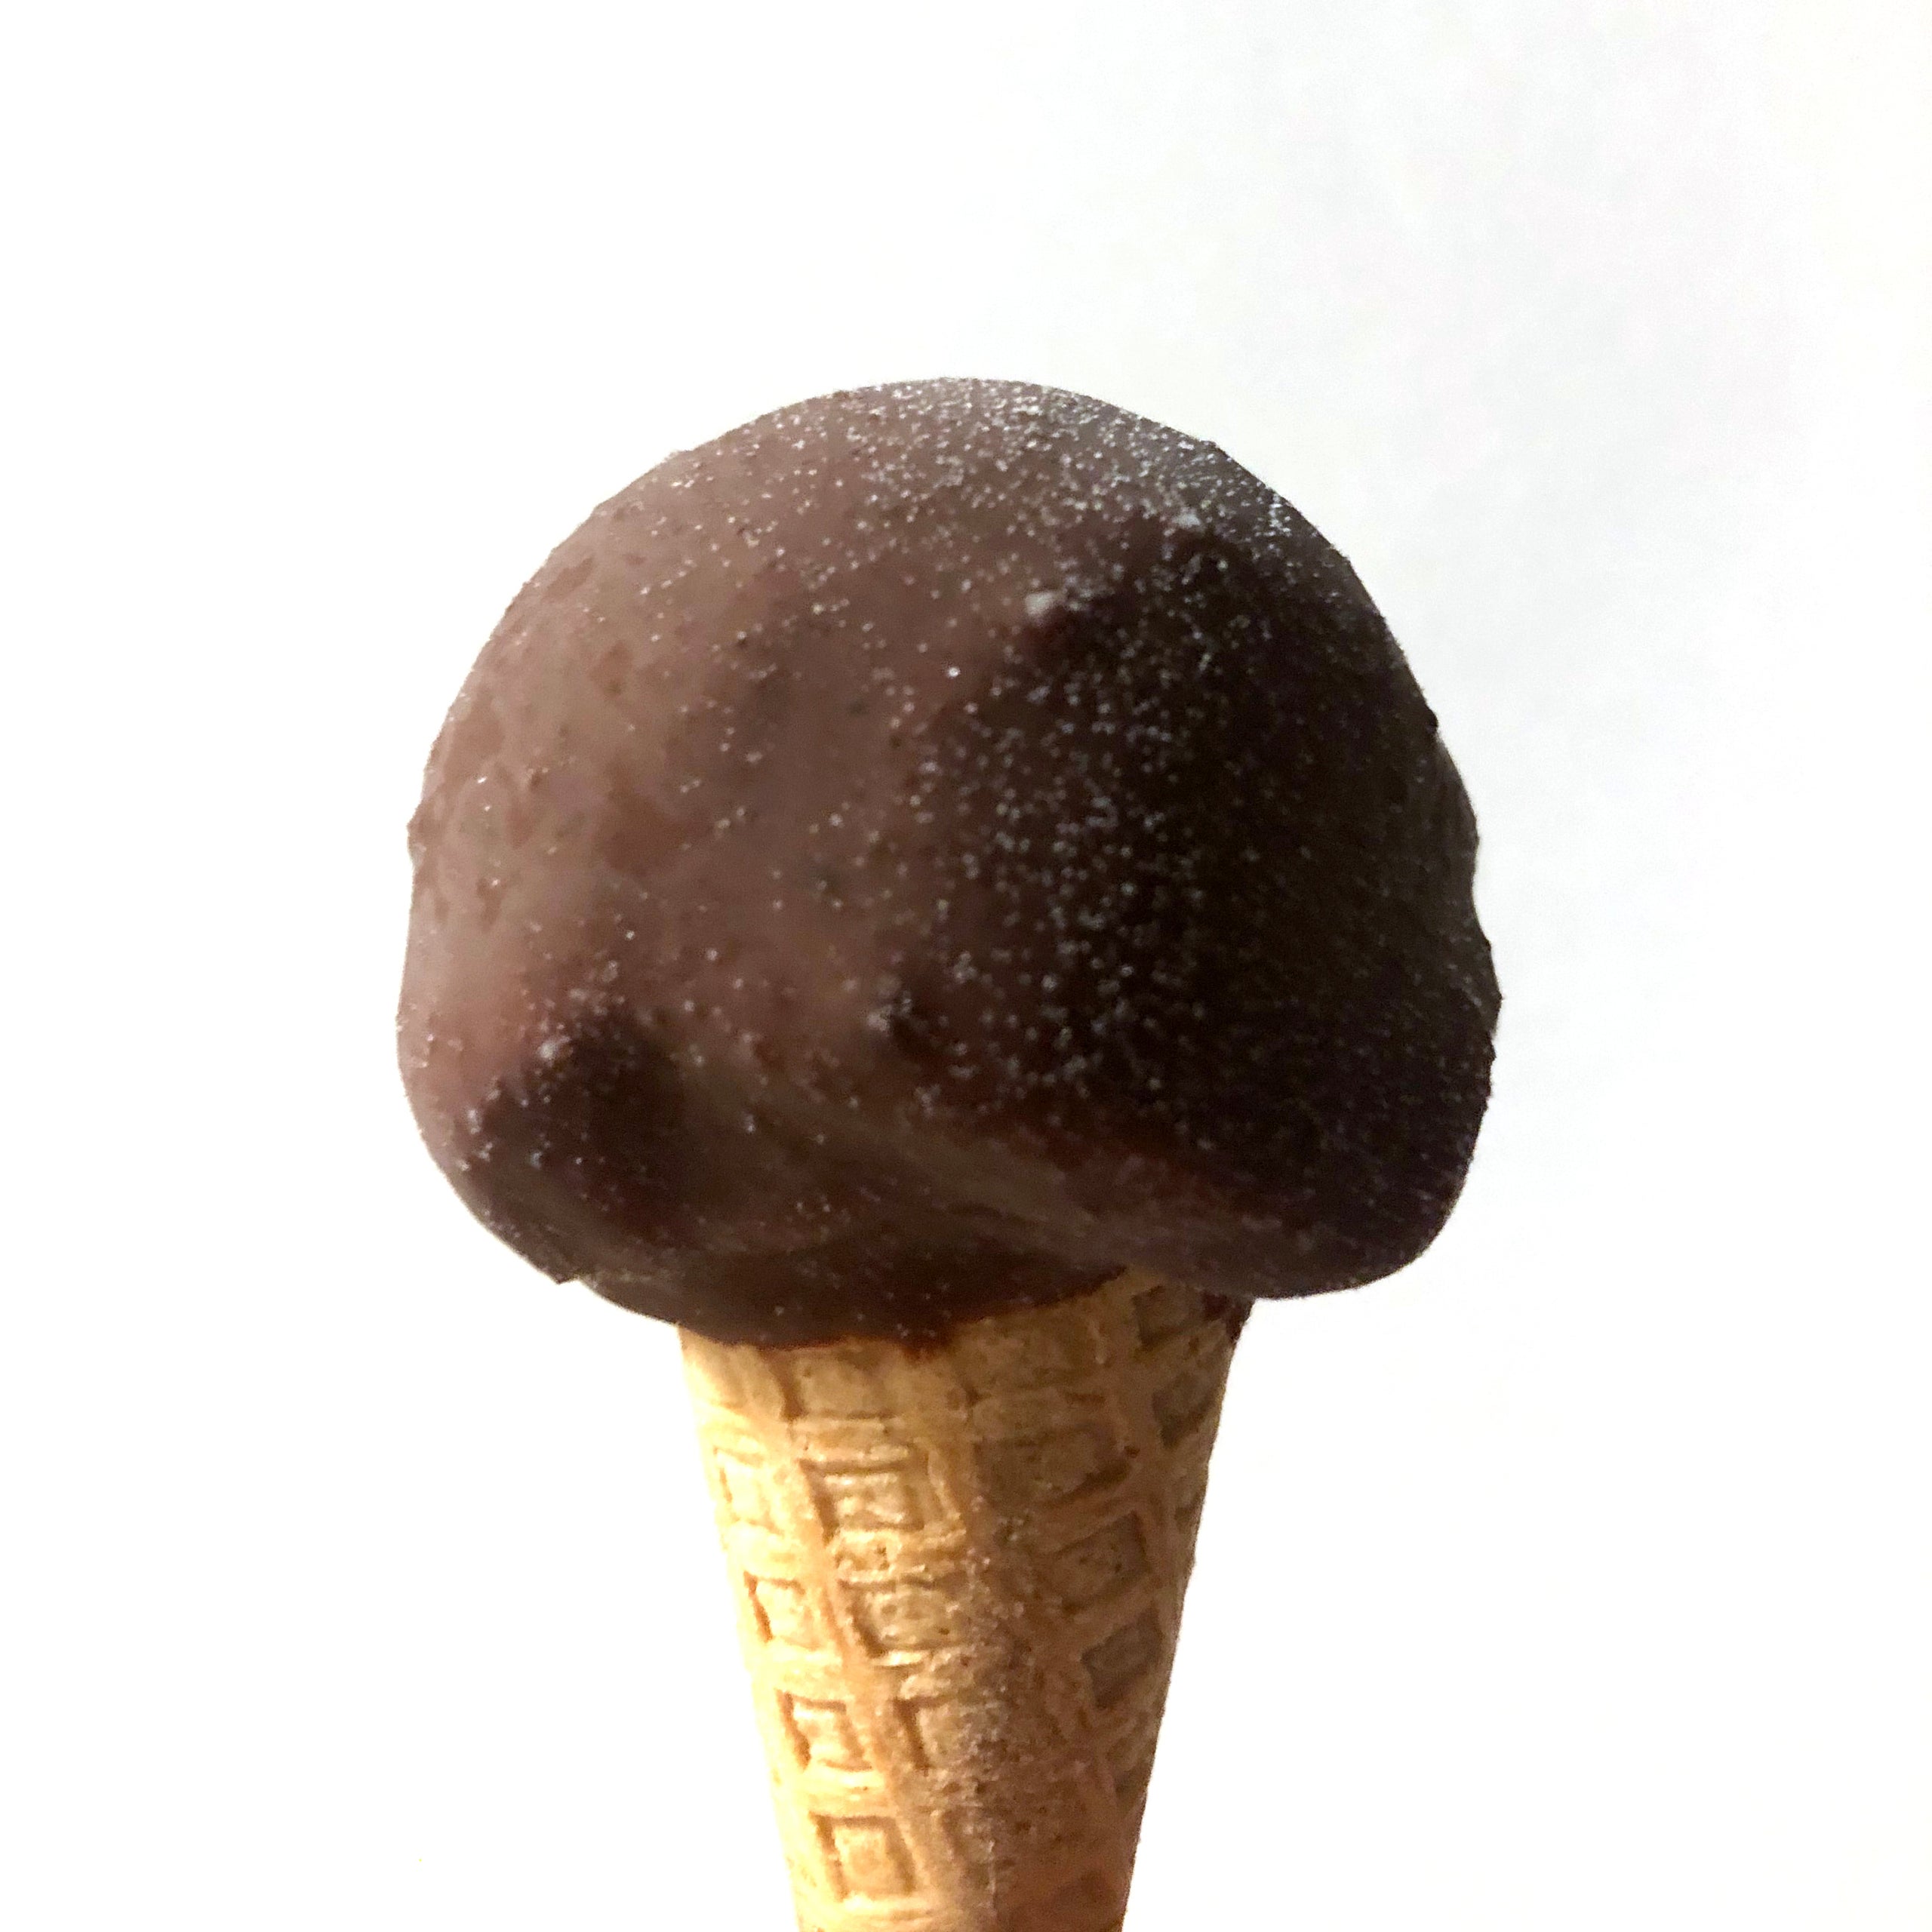 STRACCIATELLA FUNGHETTI (Chocolate covered mini gelato cone)